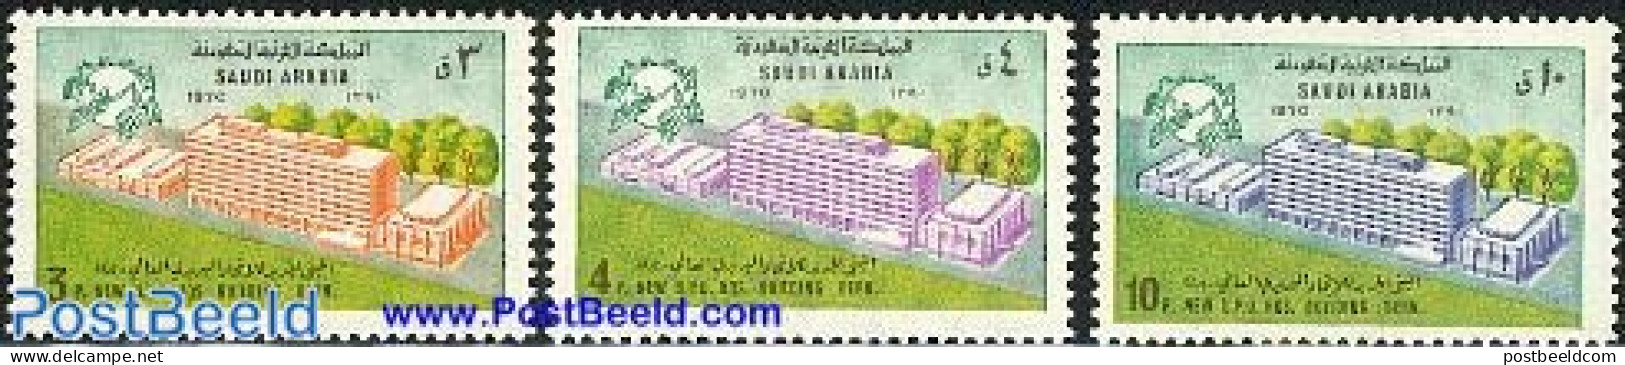 Saudi Arabia 1974 New UPU Building 3v, Mint NH, U.P.U. - U.P.U.